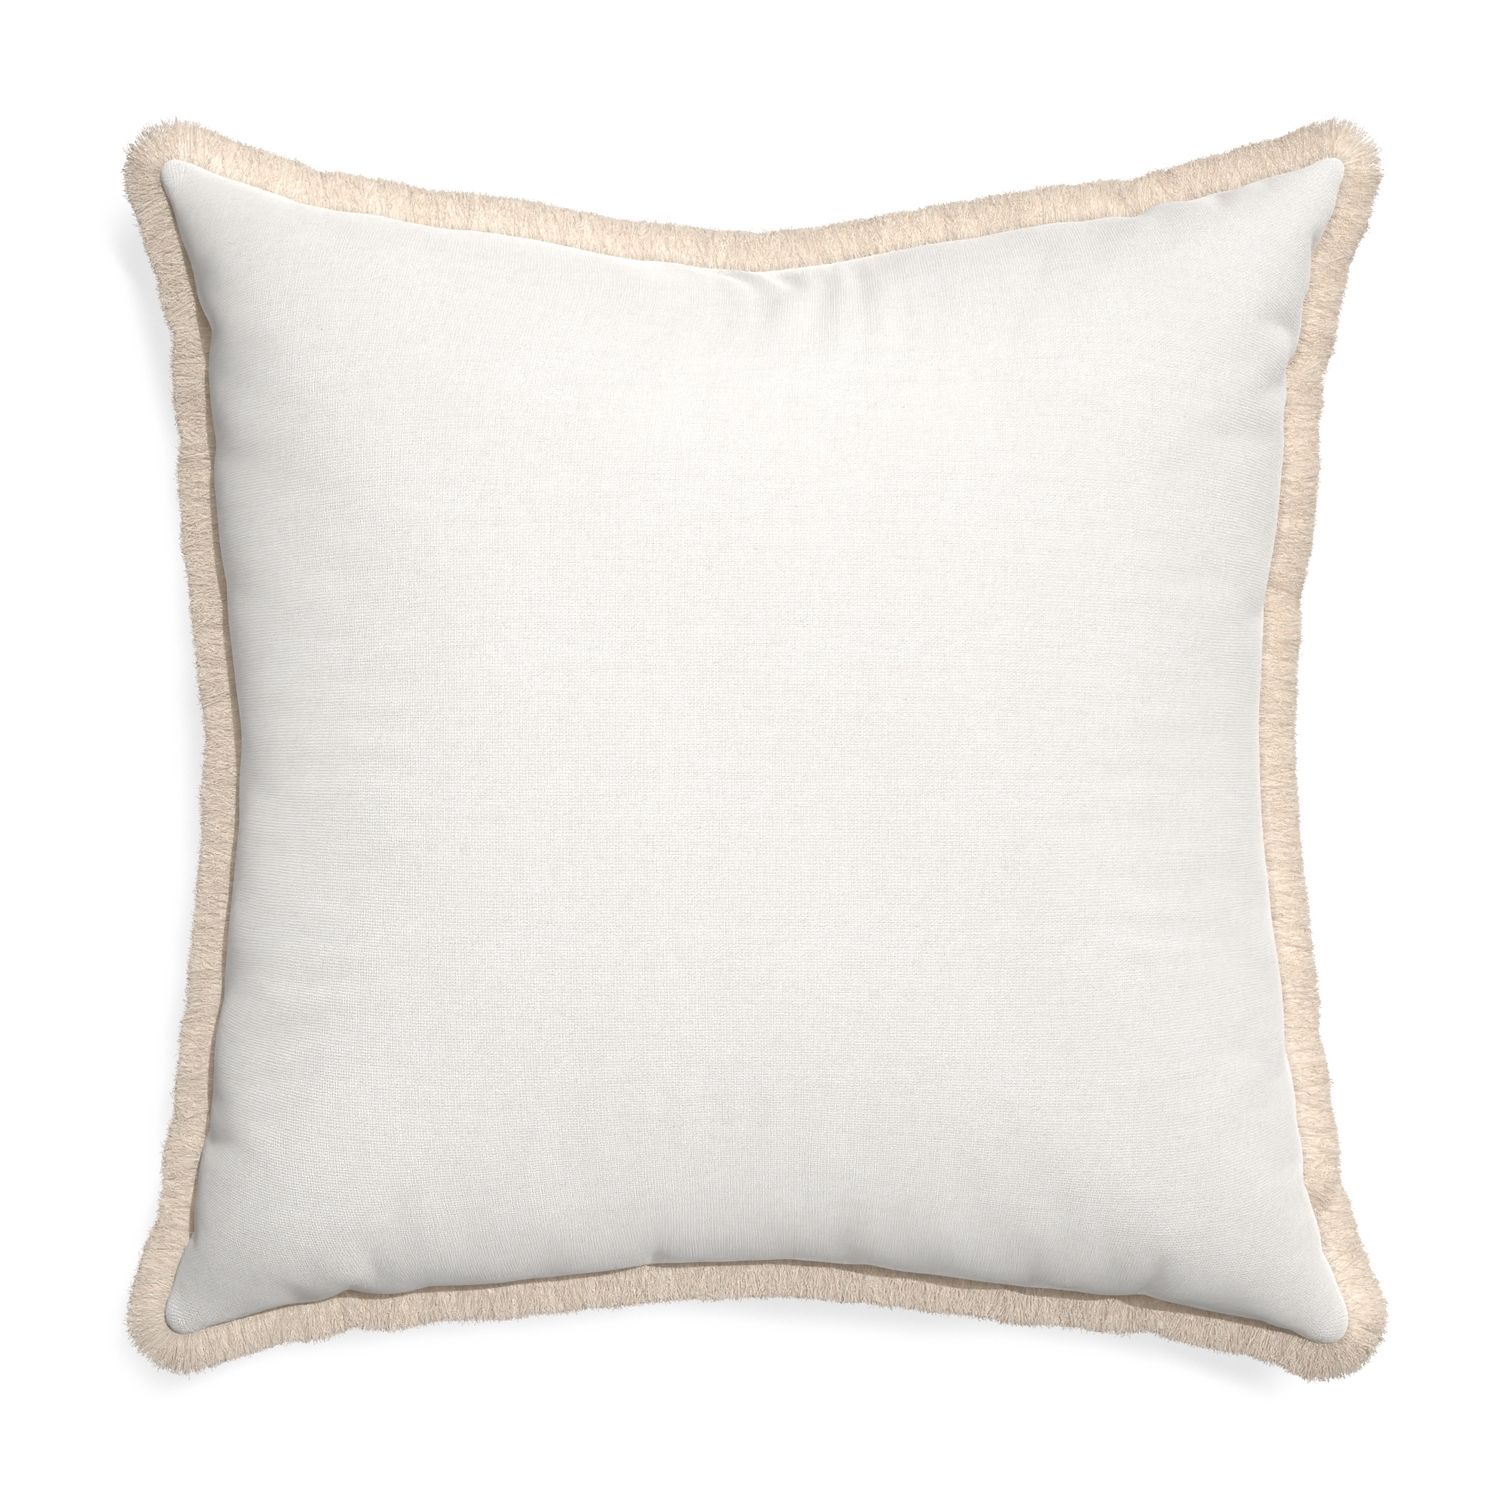 Euro-sham flour custom pillow with cream fringe on white background